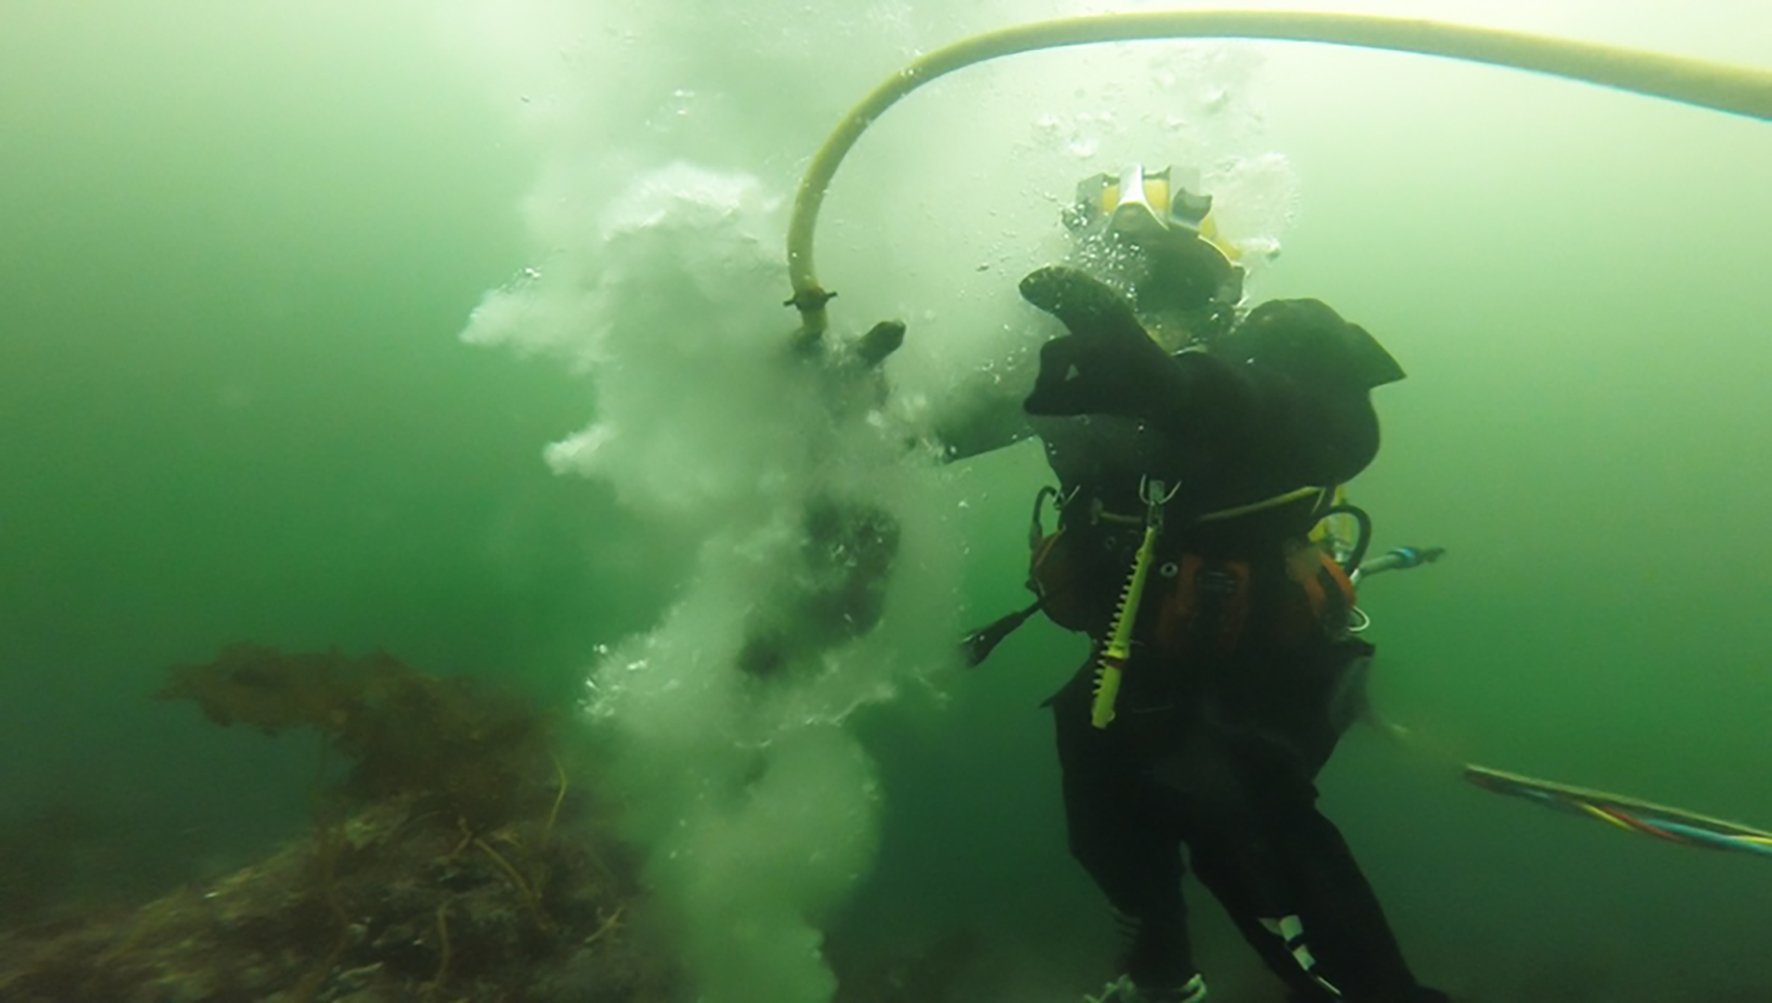 Innaskjærsdykkerne utfører en rekke forskjellige typer dykk, blant annet for anleggs- og havbruksnæringen. Foto: Marius Winsjansen